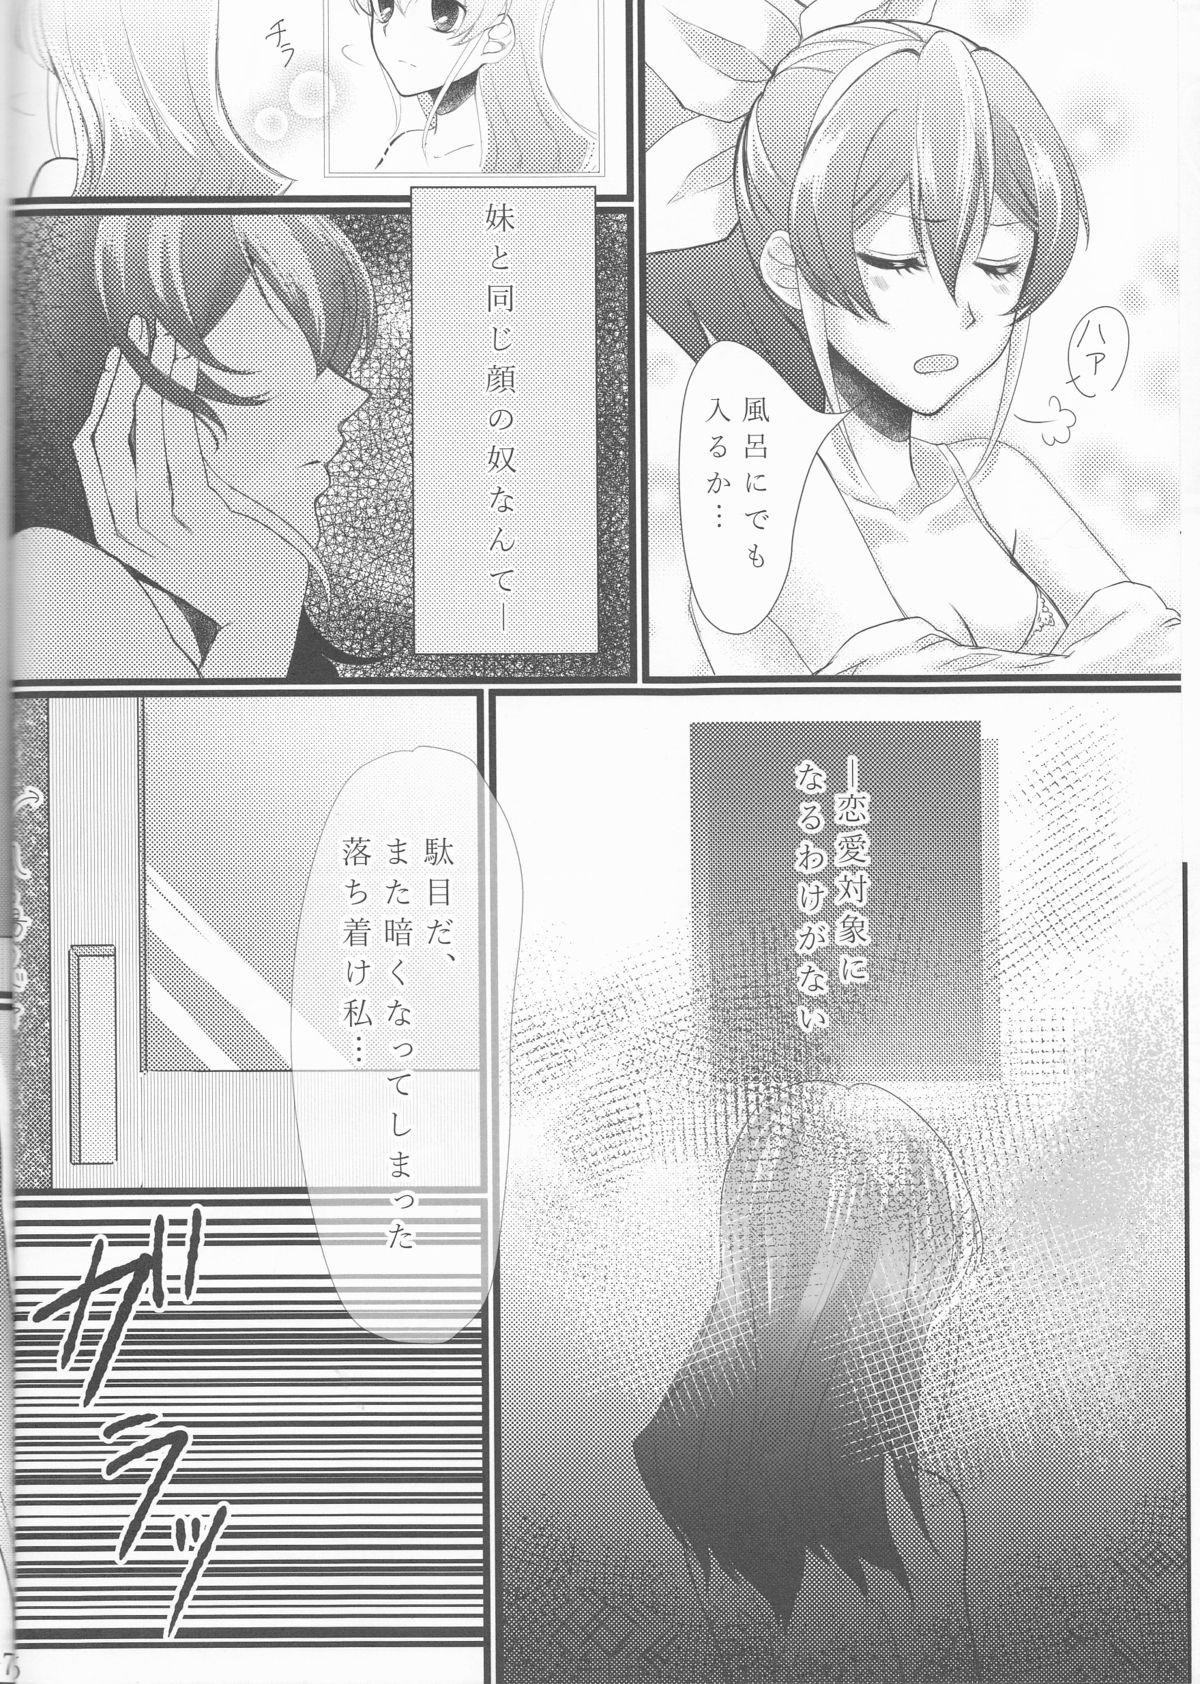 Tittyfuck Hoshoku Kankei ni Aru Serena to Shun ga Renai Kanjou o Idaku to Kou Naru. - Yu-gi-oh arc-v Periscope - Page 7